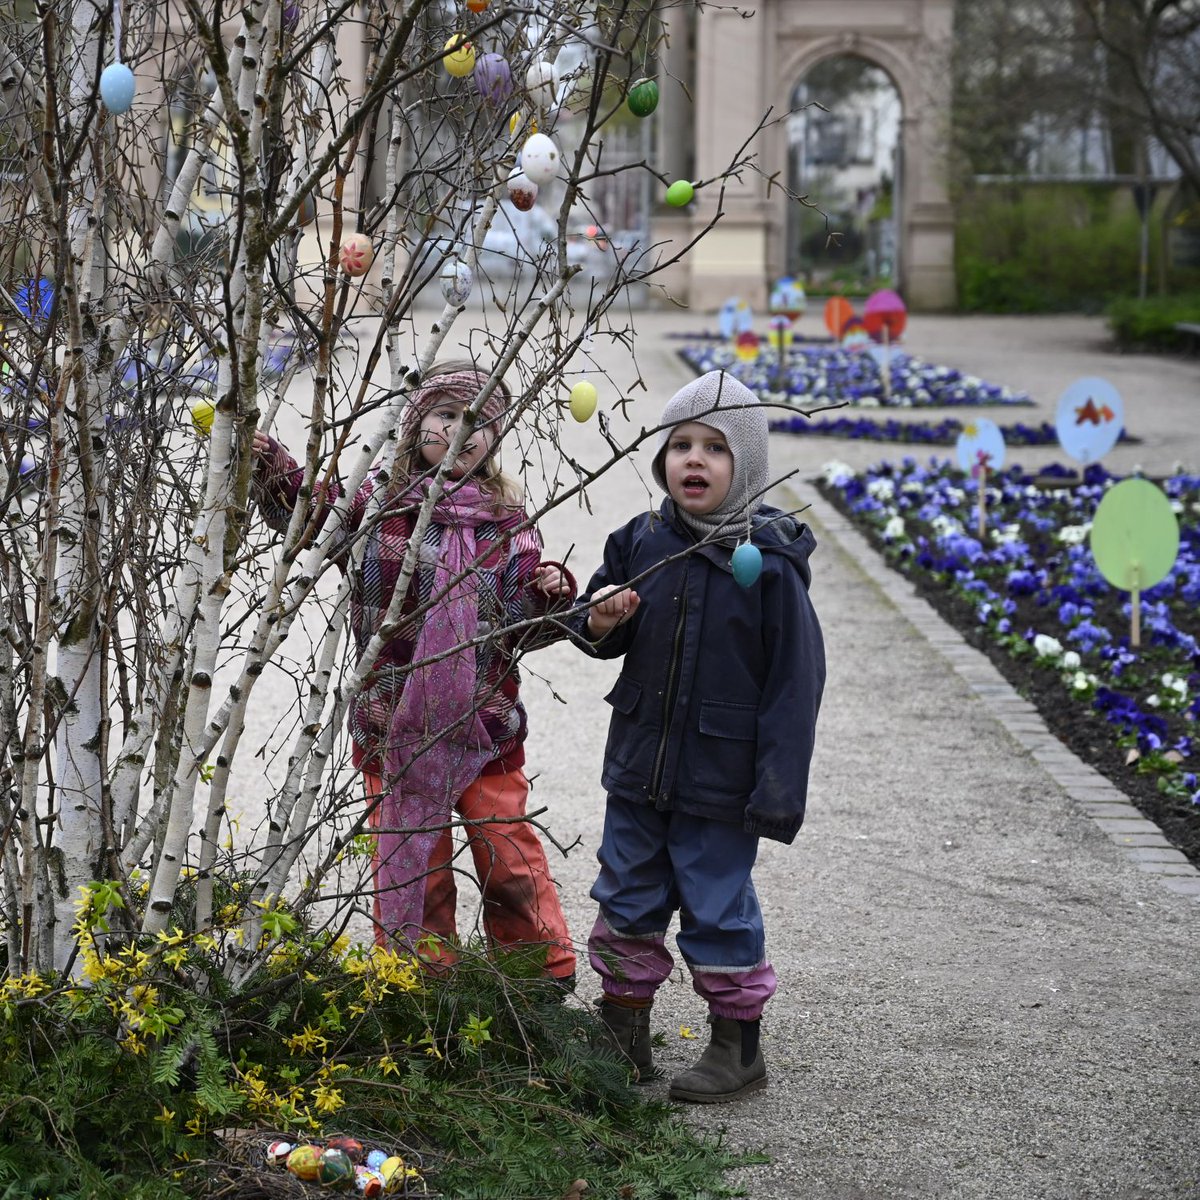 Der traditionelle Osterbaum wurde heute im Bürgerpark mit Kita-Kindern und Bewohnern eines benachbarten Altenheims aufgestellt. Seit 1970 gibt es den Brauch, an Gründonnerstag eine Birke mit gebastelten Eiern zu schmücken. Wir wünschen Frohe Ostern! t1p.de/2wzuu